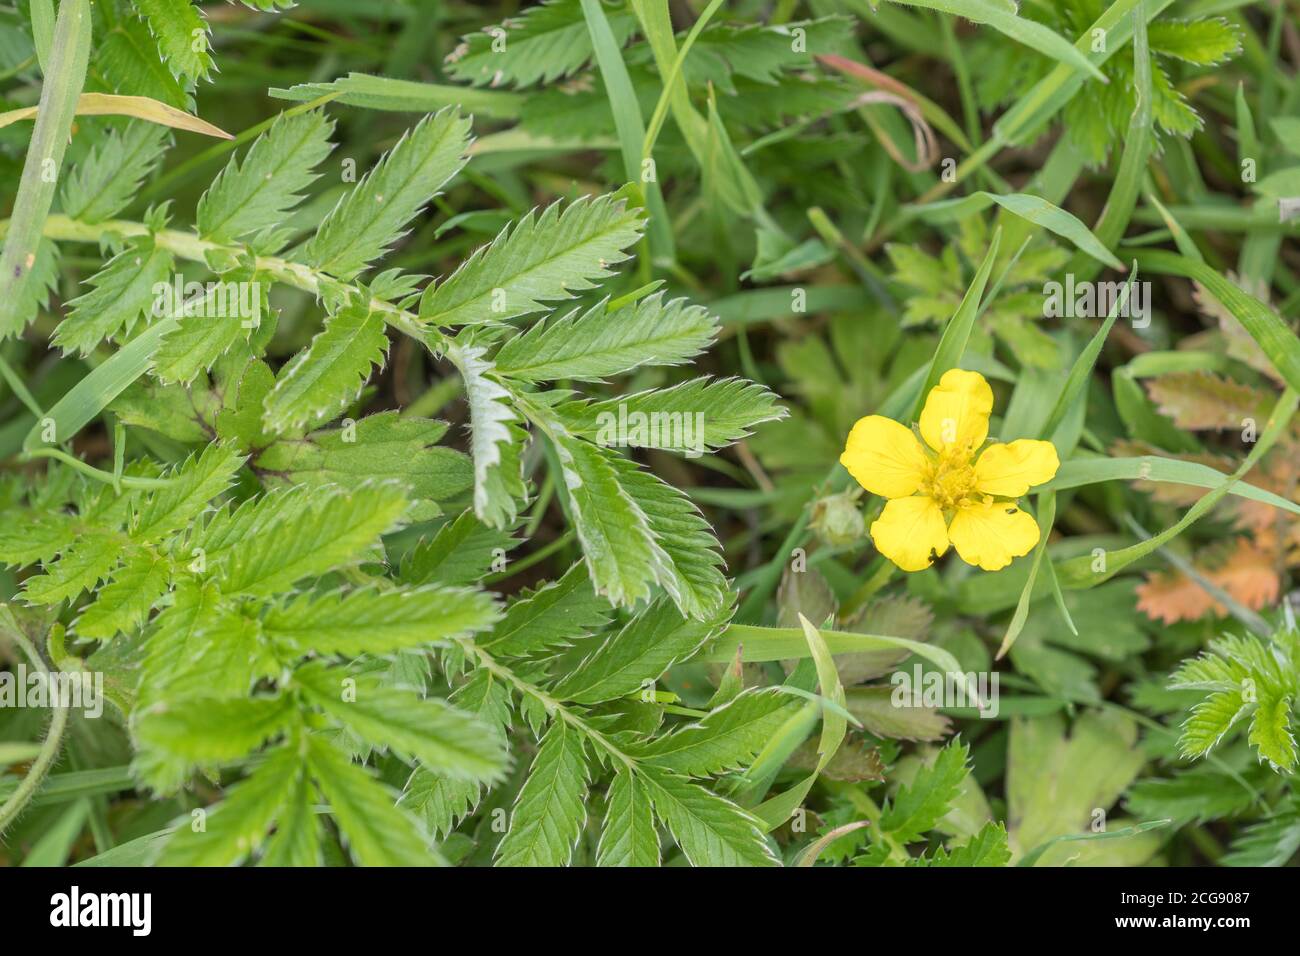 Blätter und gelbe Blume des gemeinsamen UK landwirtschaftlichen Grass Silberweed / Potentilla anserina. Wurde in der Vergangenheit als adstringierend in pflanzlichen Heilmitteln verwendet Stockfoto